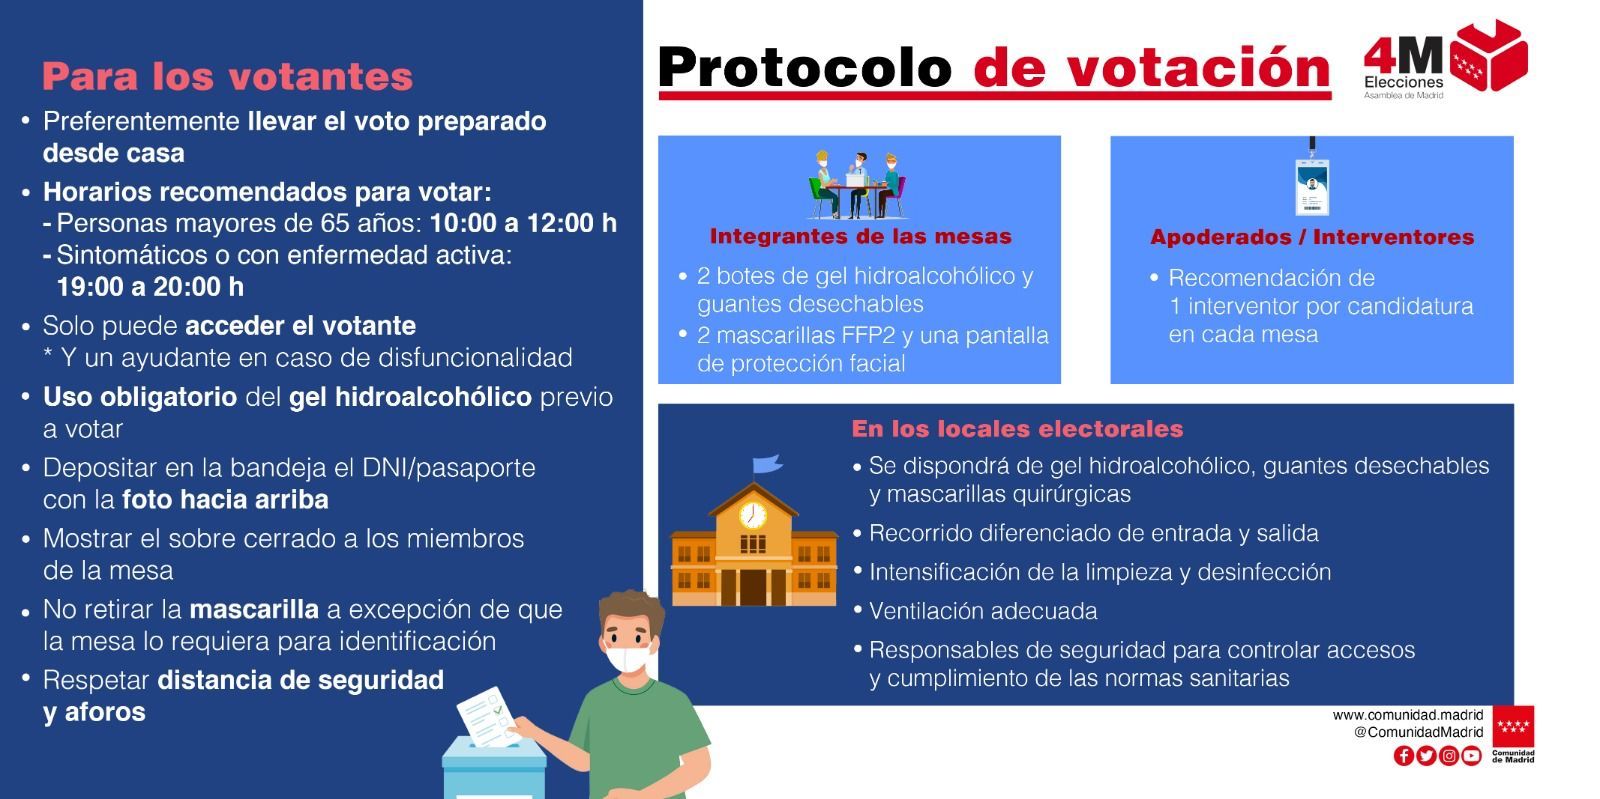 Protocolo de votación 4M